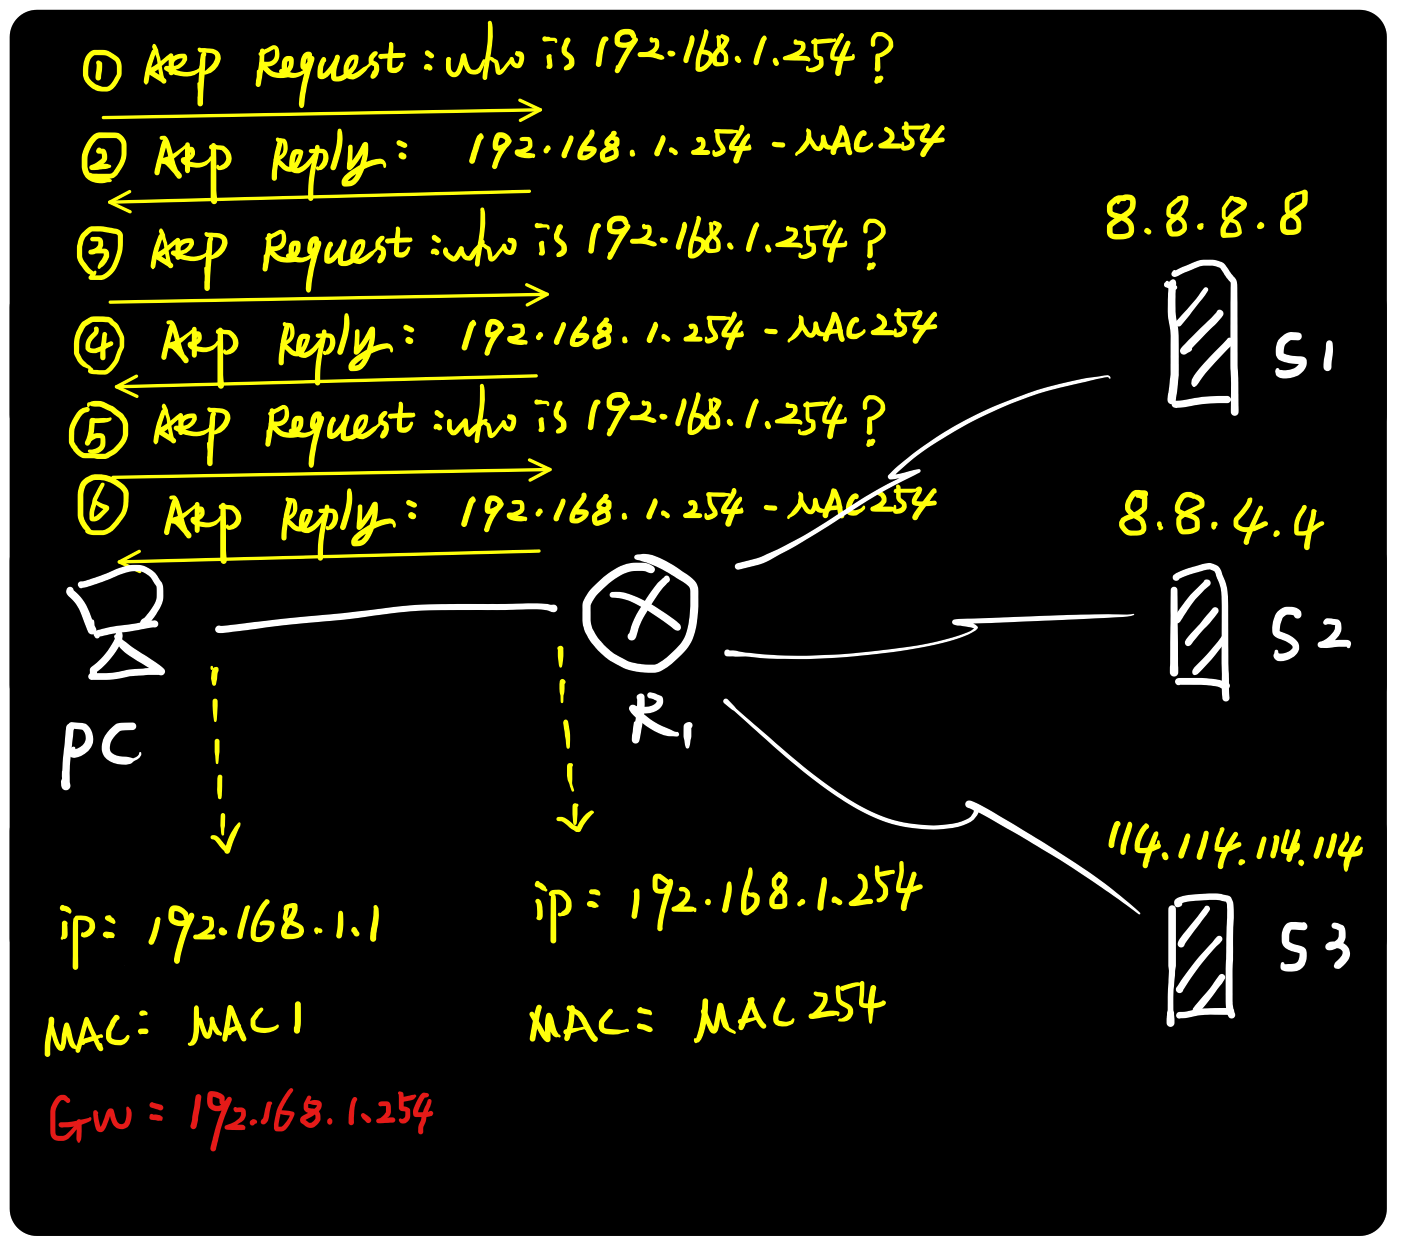 图解ARP协议（四）代理ARP原理与实践（“善意的欺骗”）_TCP/IP_10